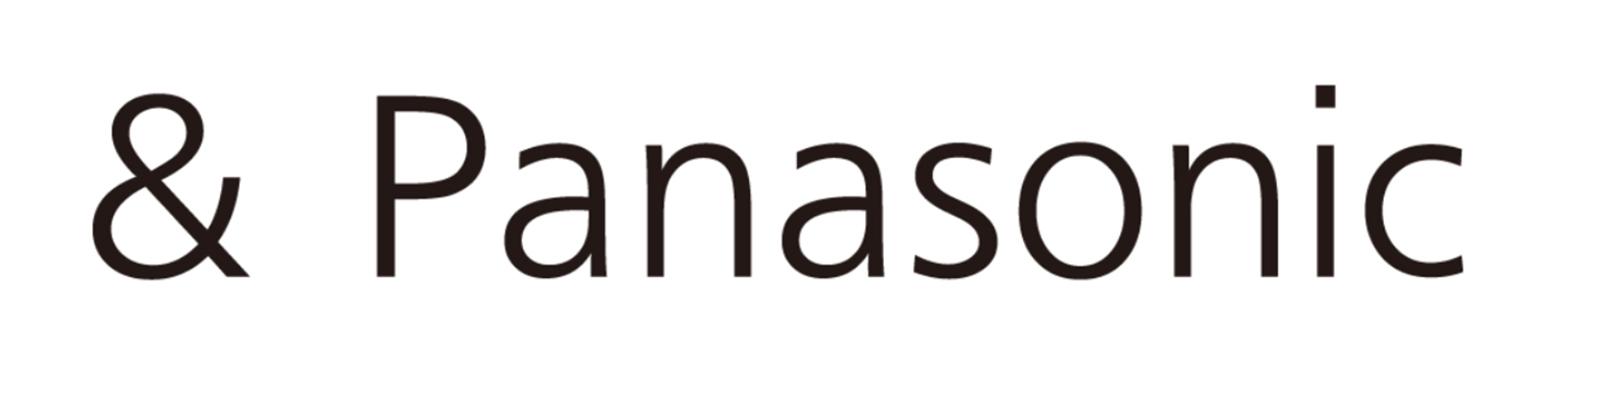 「& Panasonic」名称ロゴマーク